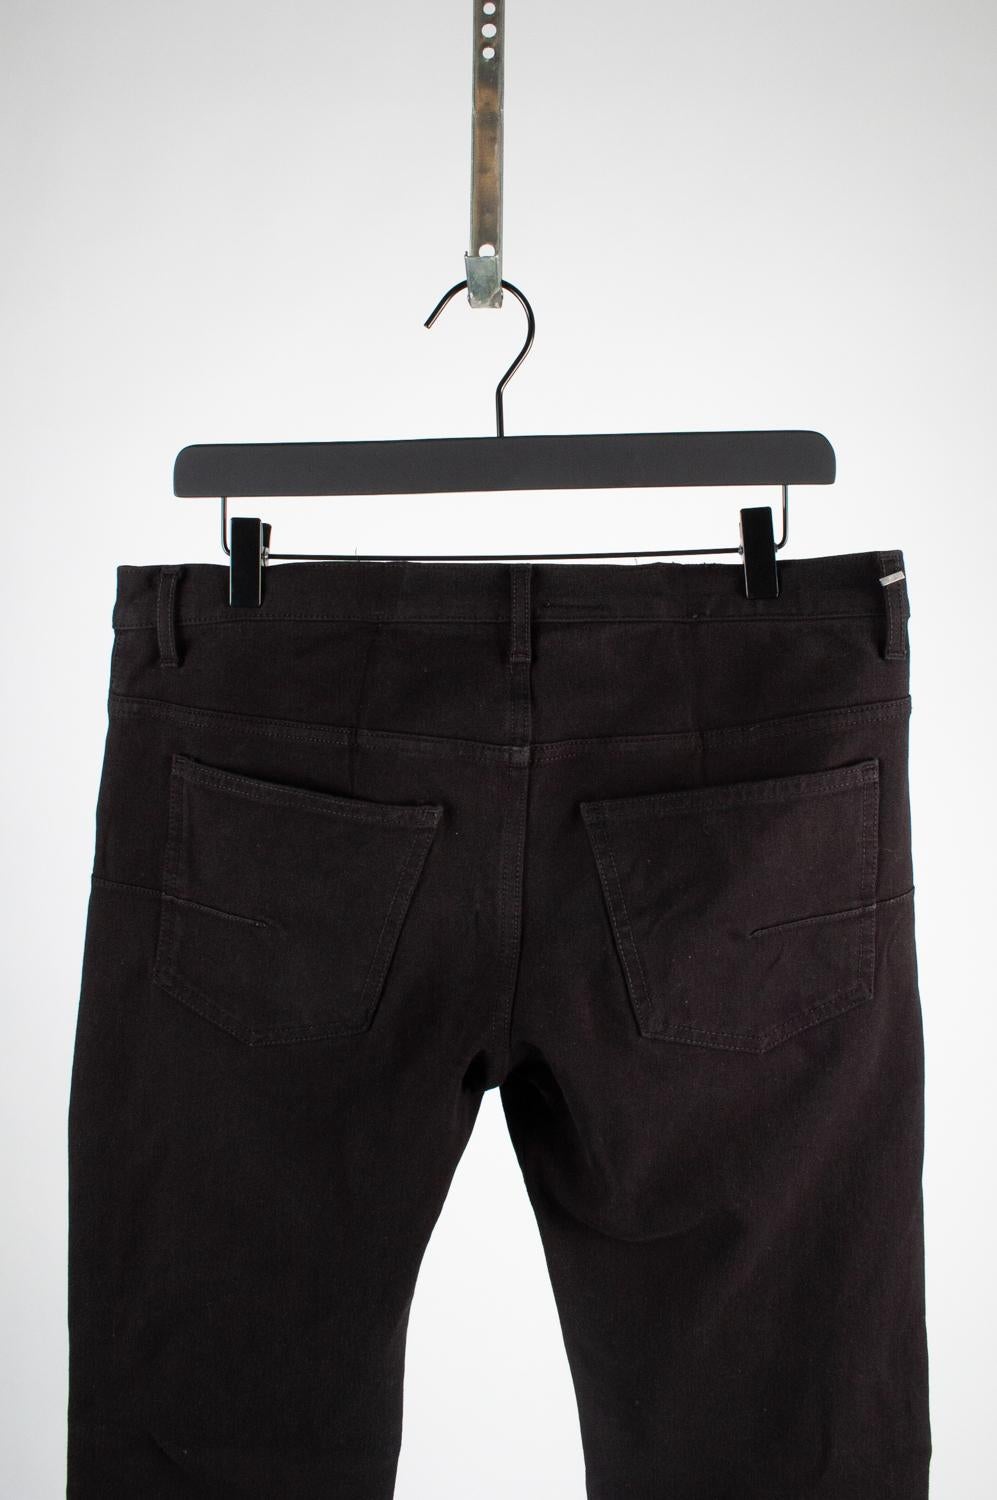 Dior Homme Men Black Jeans Pants Size 34, S520 1